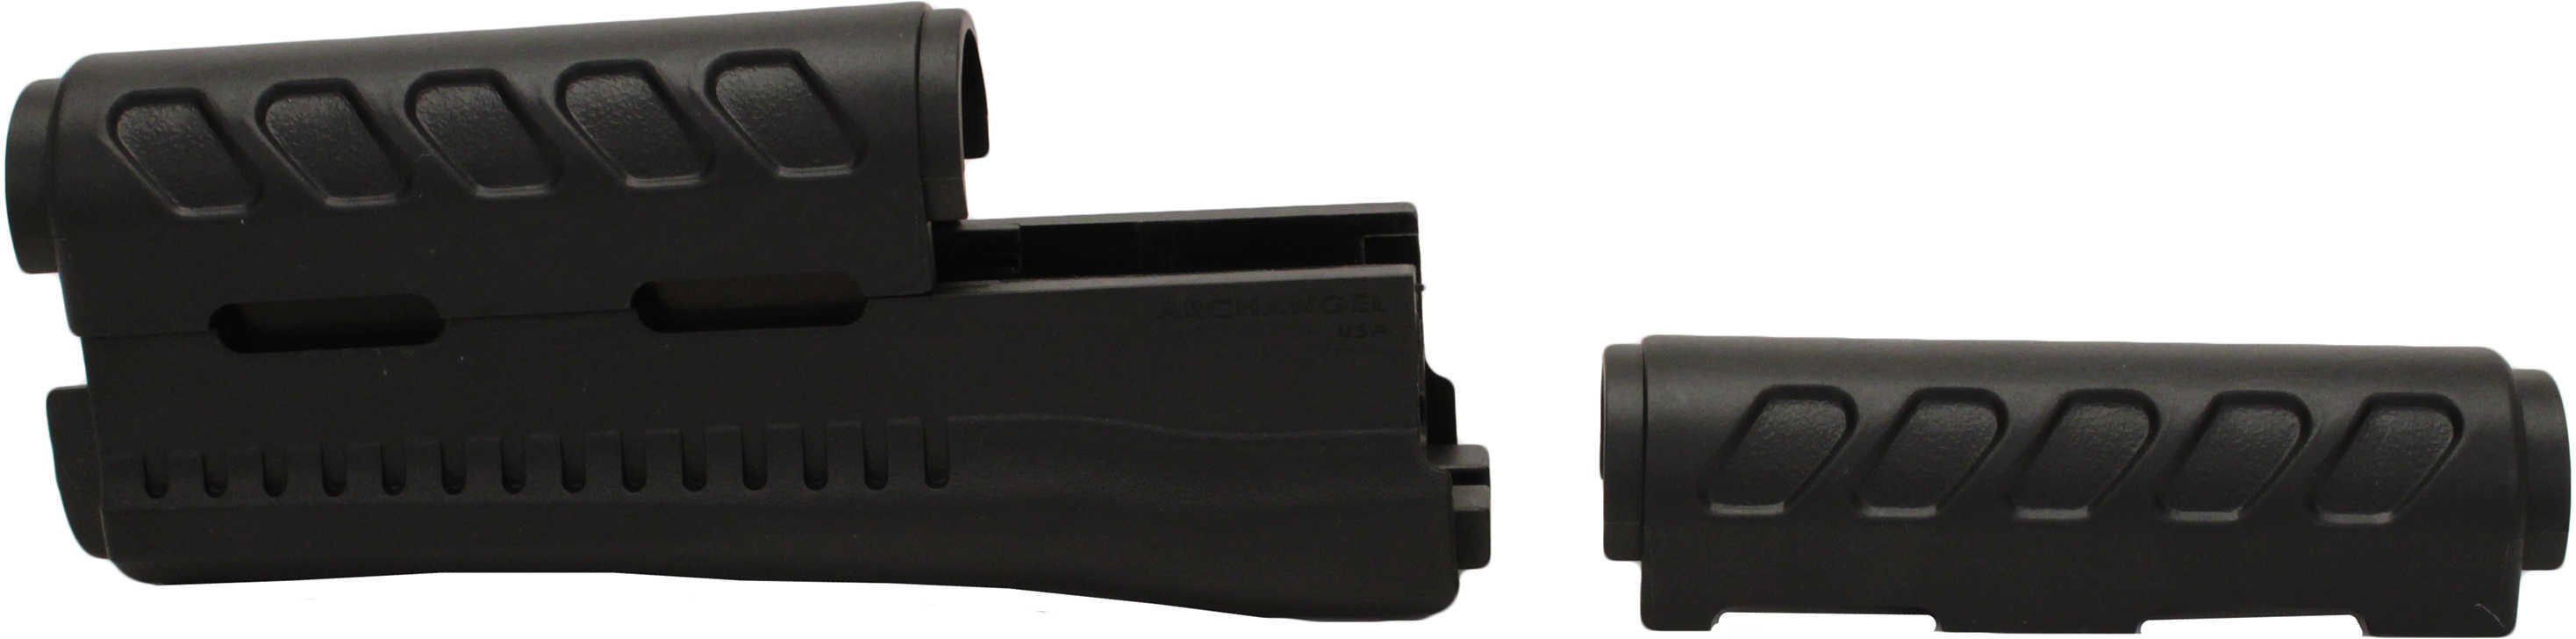 ProMag Archangel Forend Black Internal Heat Shield 4 Piece AK-Series Kit Short AKs M1913 Picatinny Rail le